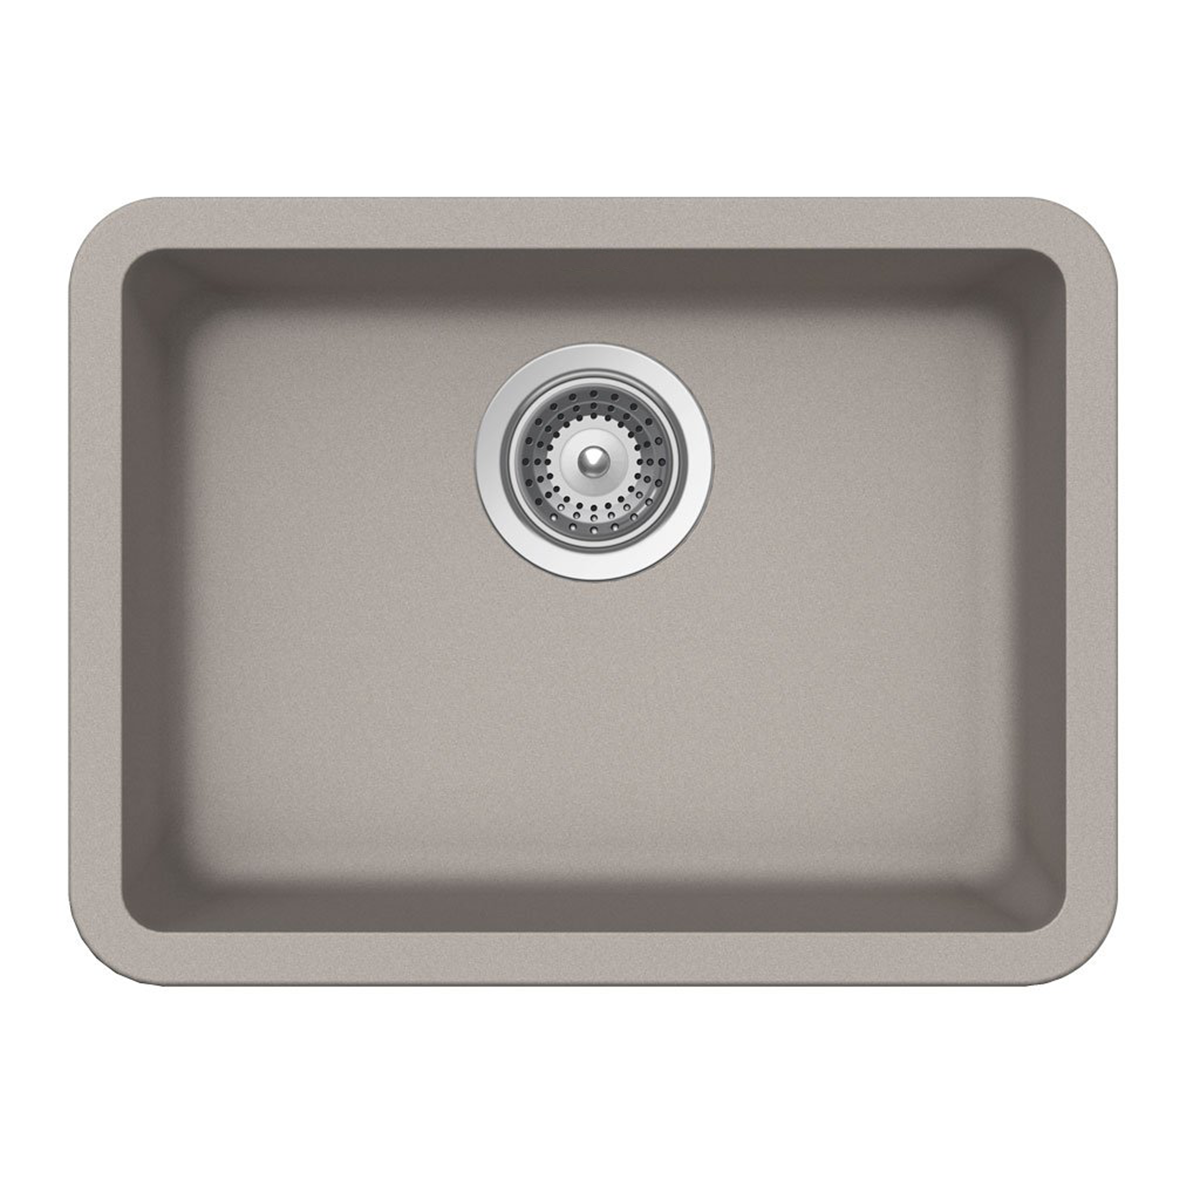 Pelican Int'l Crystallite Series PL-350 19 3/4" x 14 7/8" Concrete Granite Composite Undermount Kitchen Sink